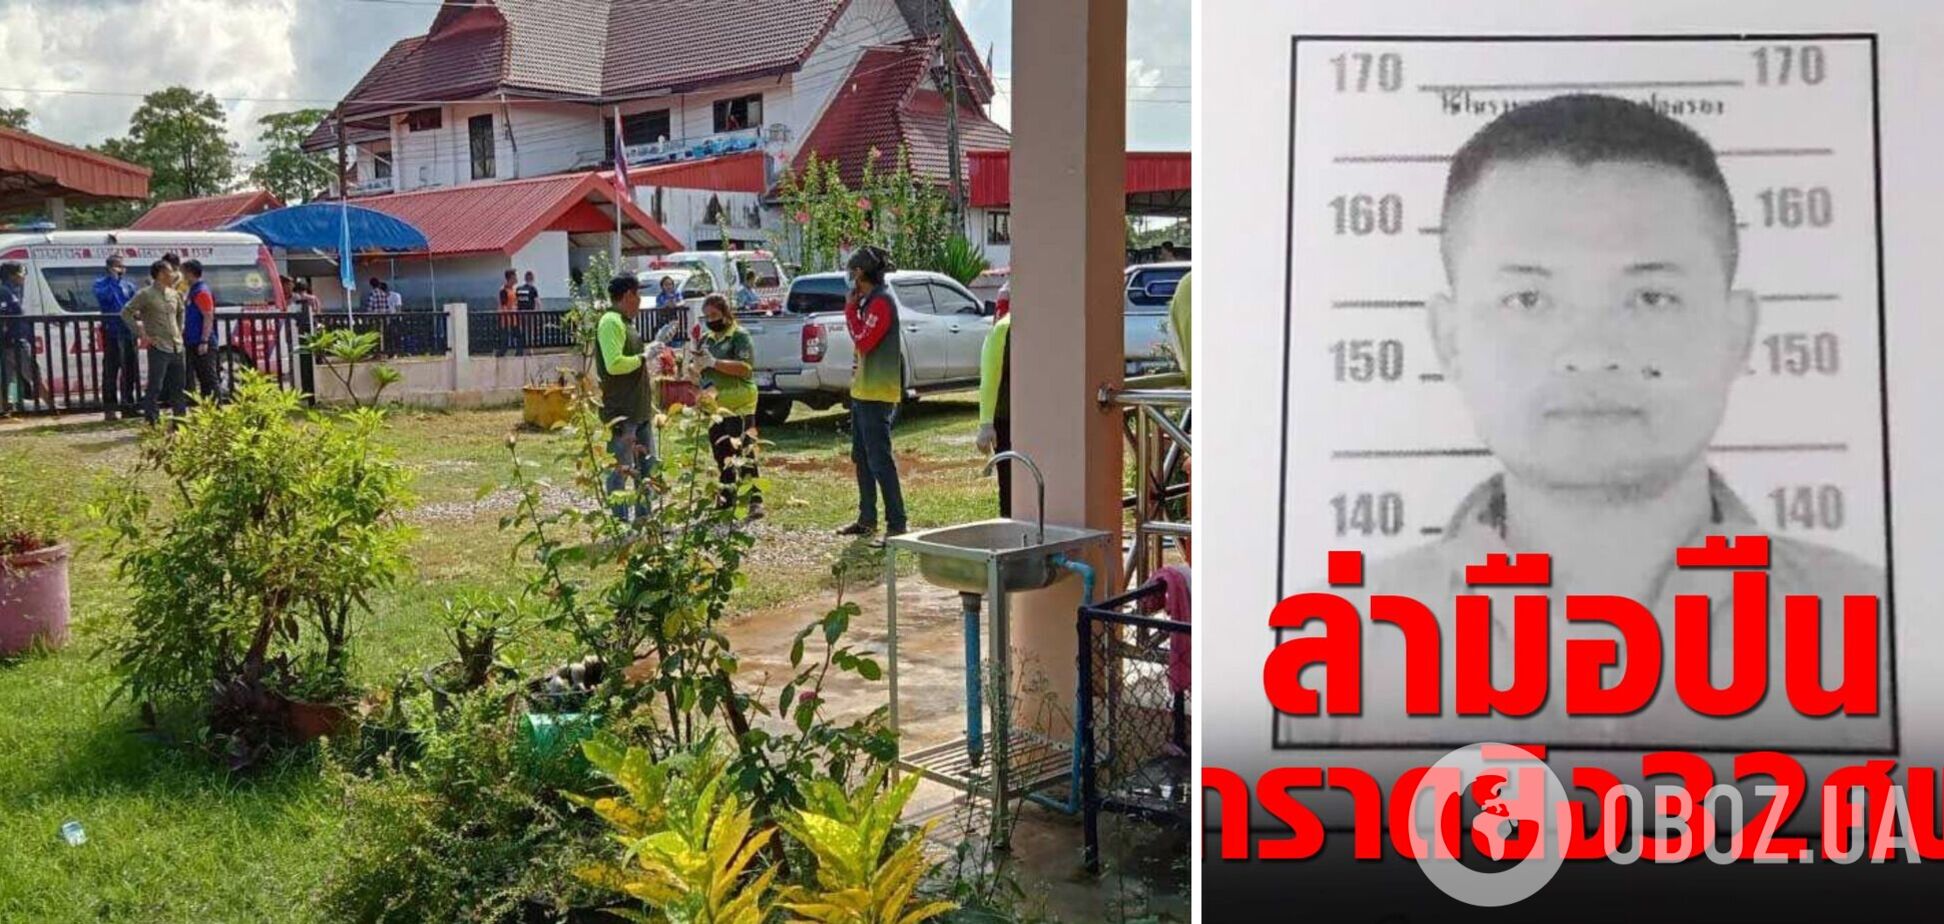 У Таїланді чоловік влаштував стрілянину в дитсадку, загинуло 30 осіб. Фото